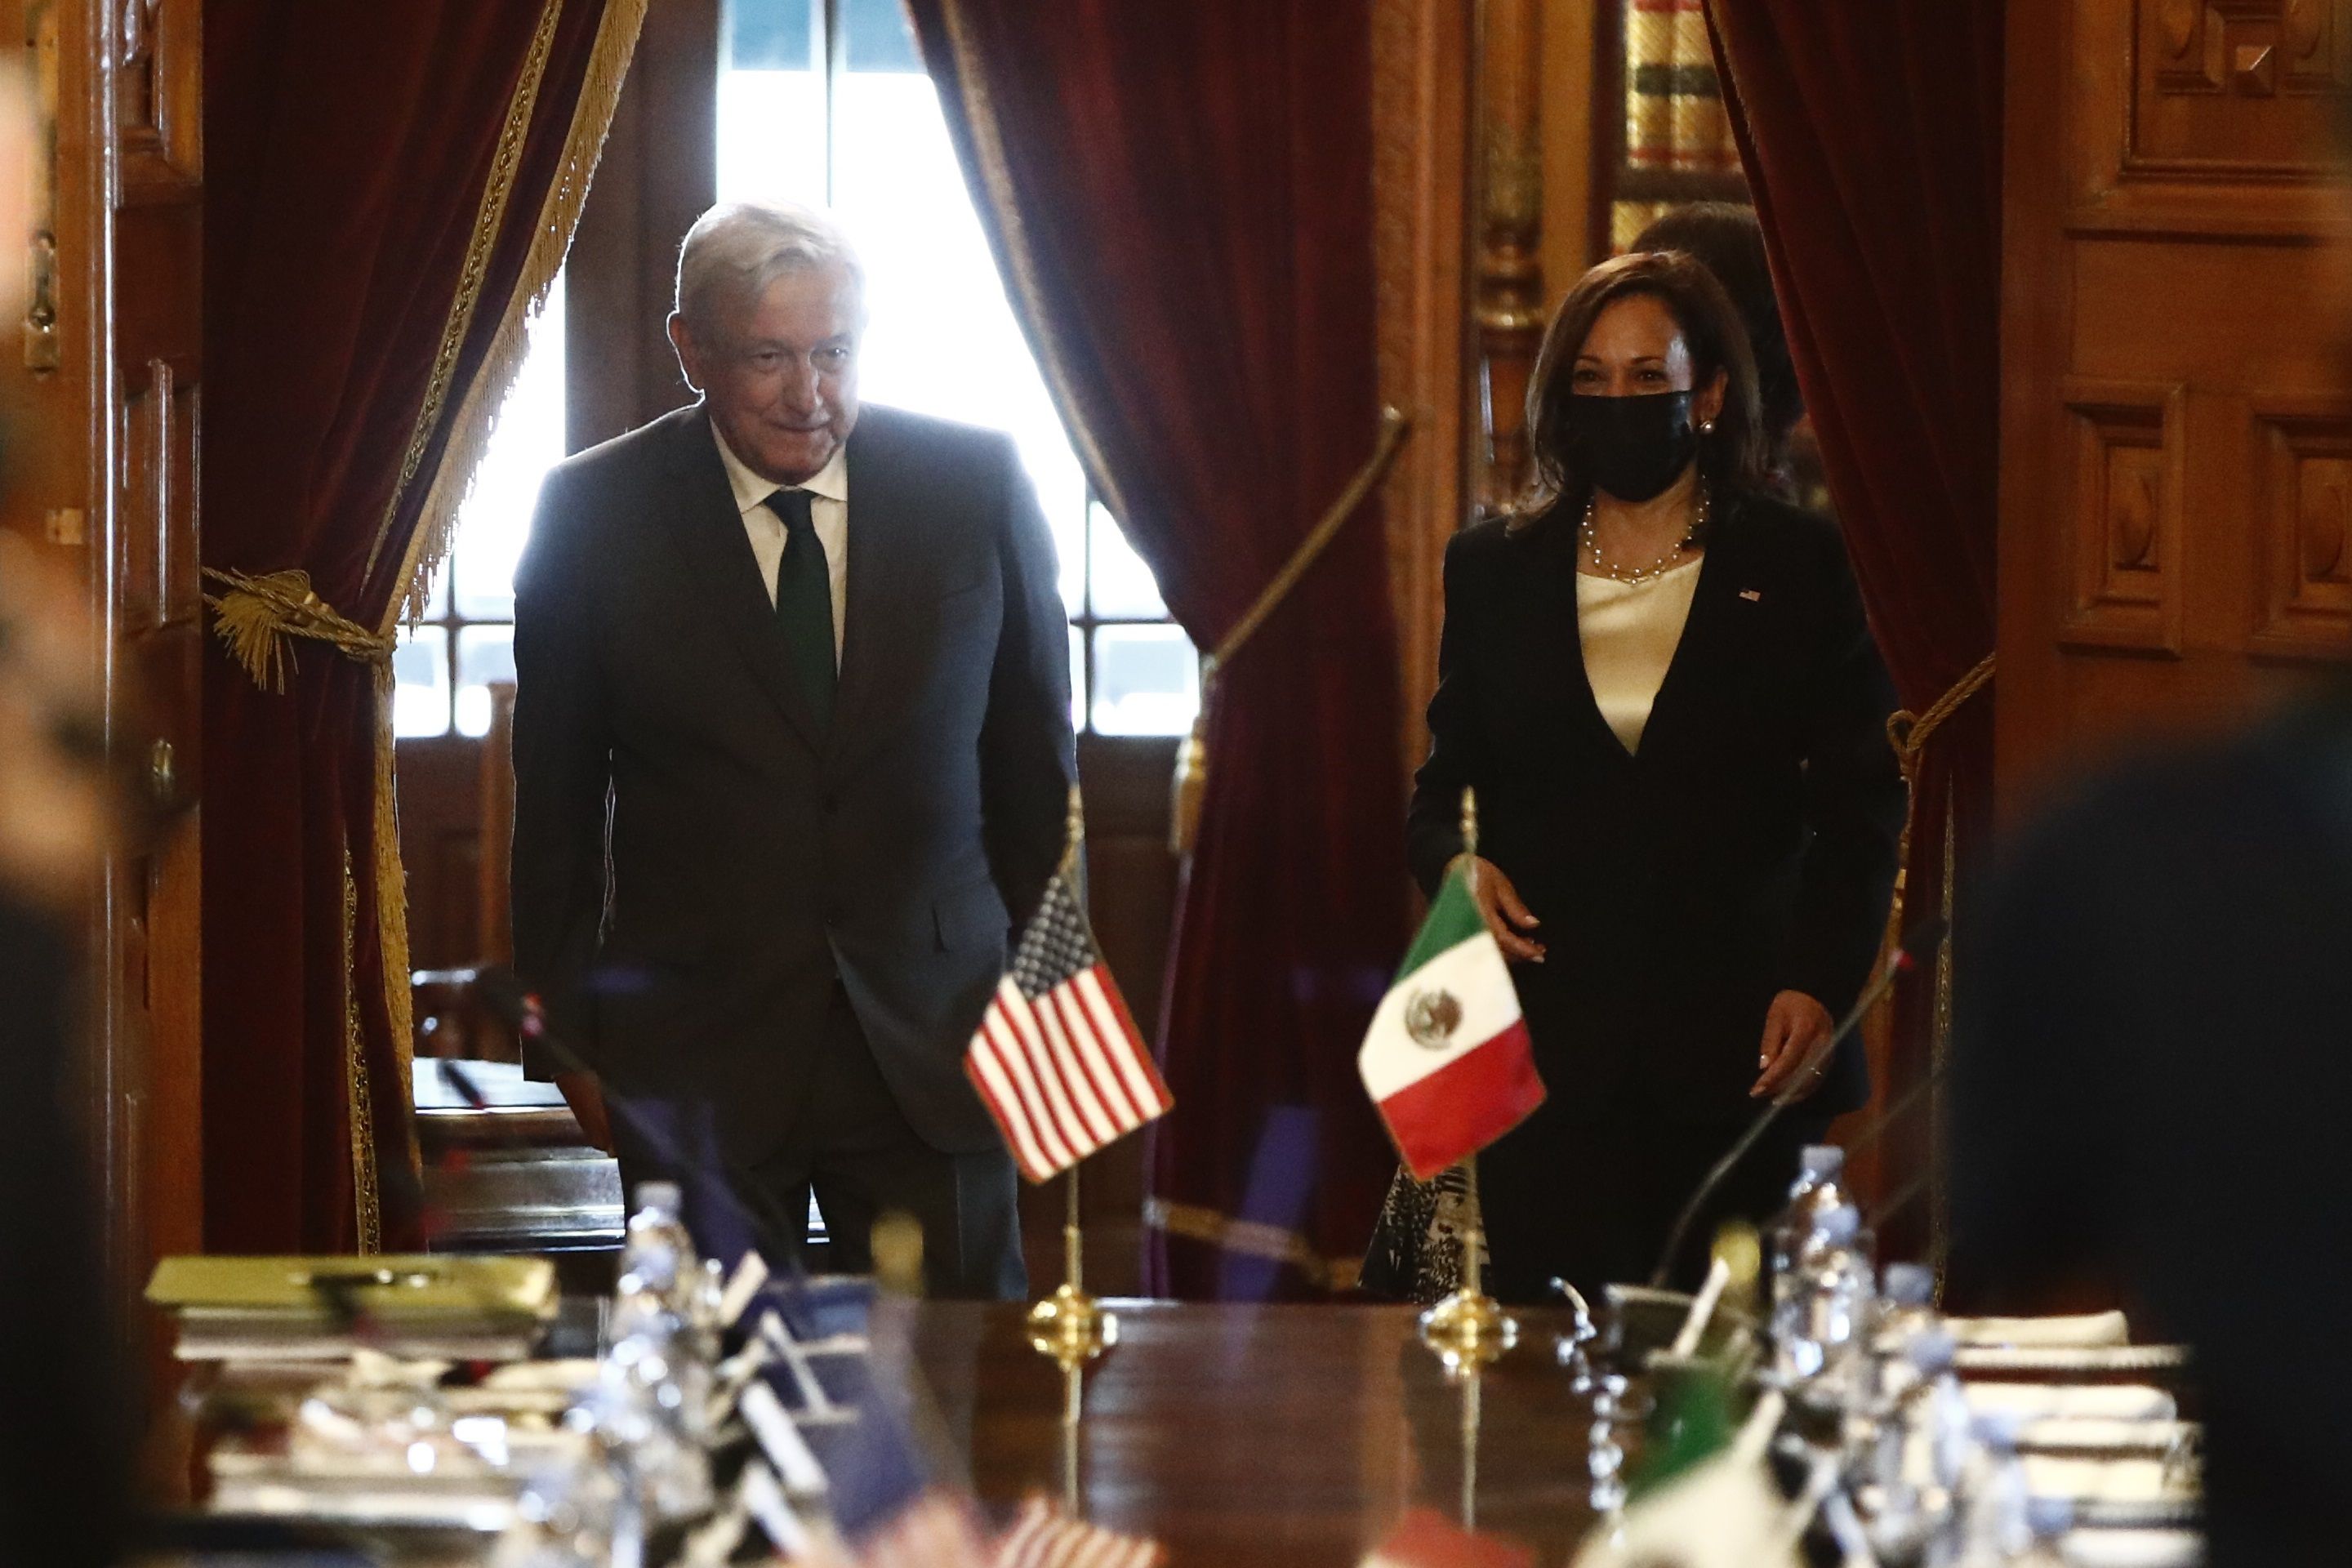 Kamala Harris, vicepresidente de EEUU arribó a México en la madrugada para dialogar con el presidente López Obrador de diversos temas de la agenda bilateral (Foto: EFE / José Méndez)